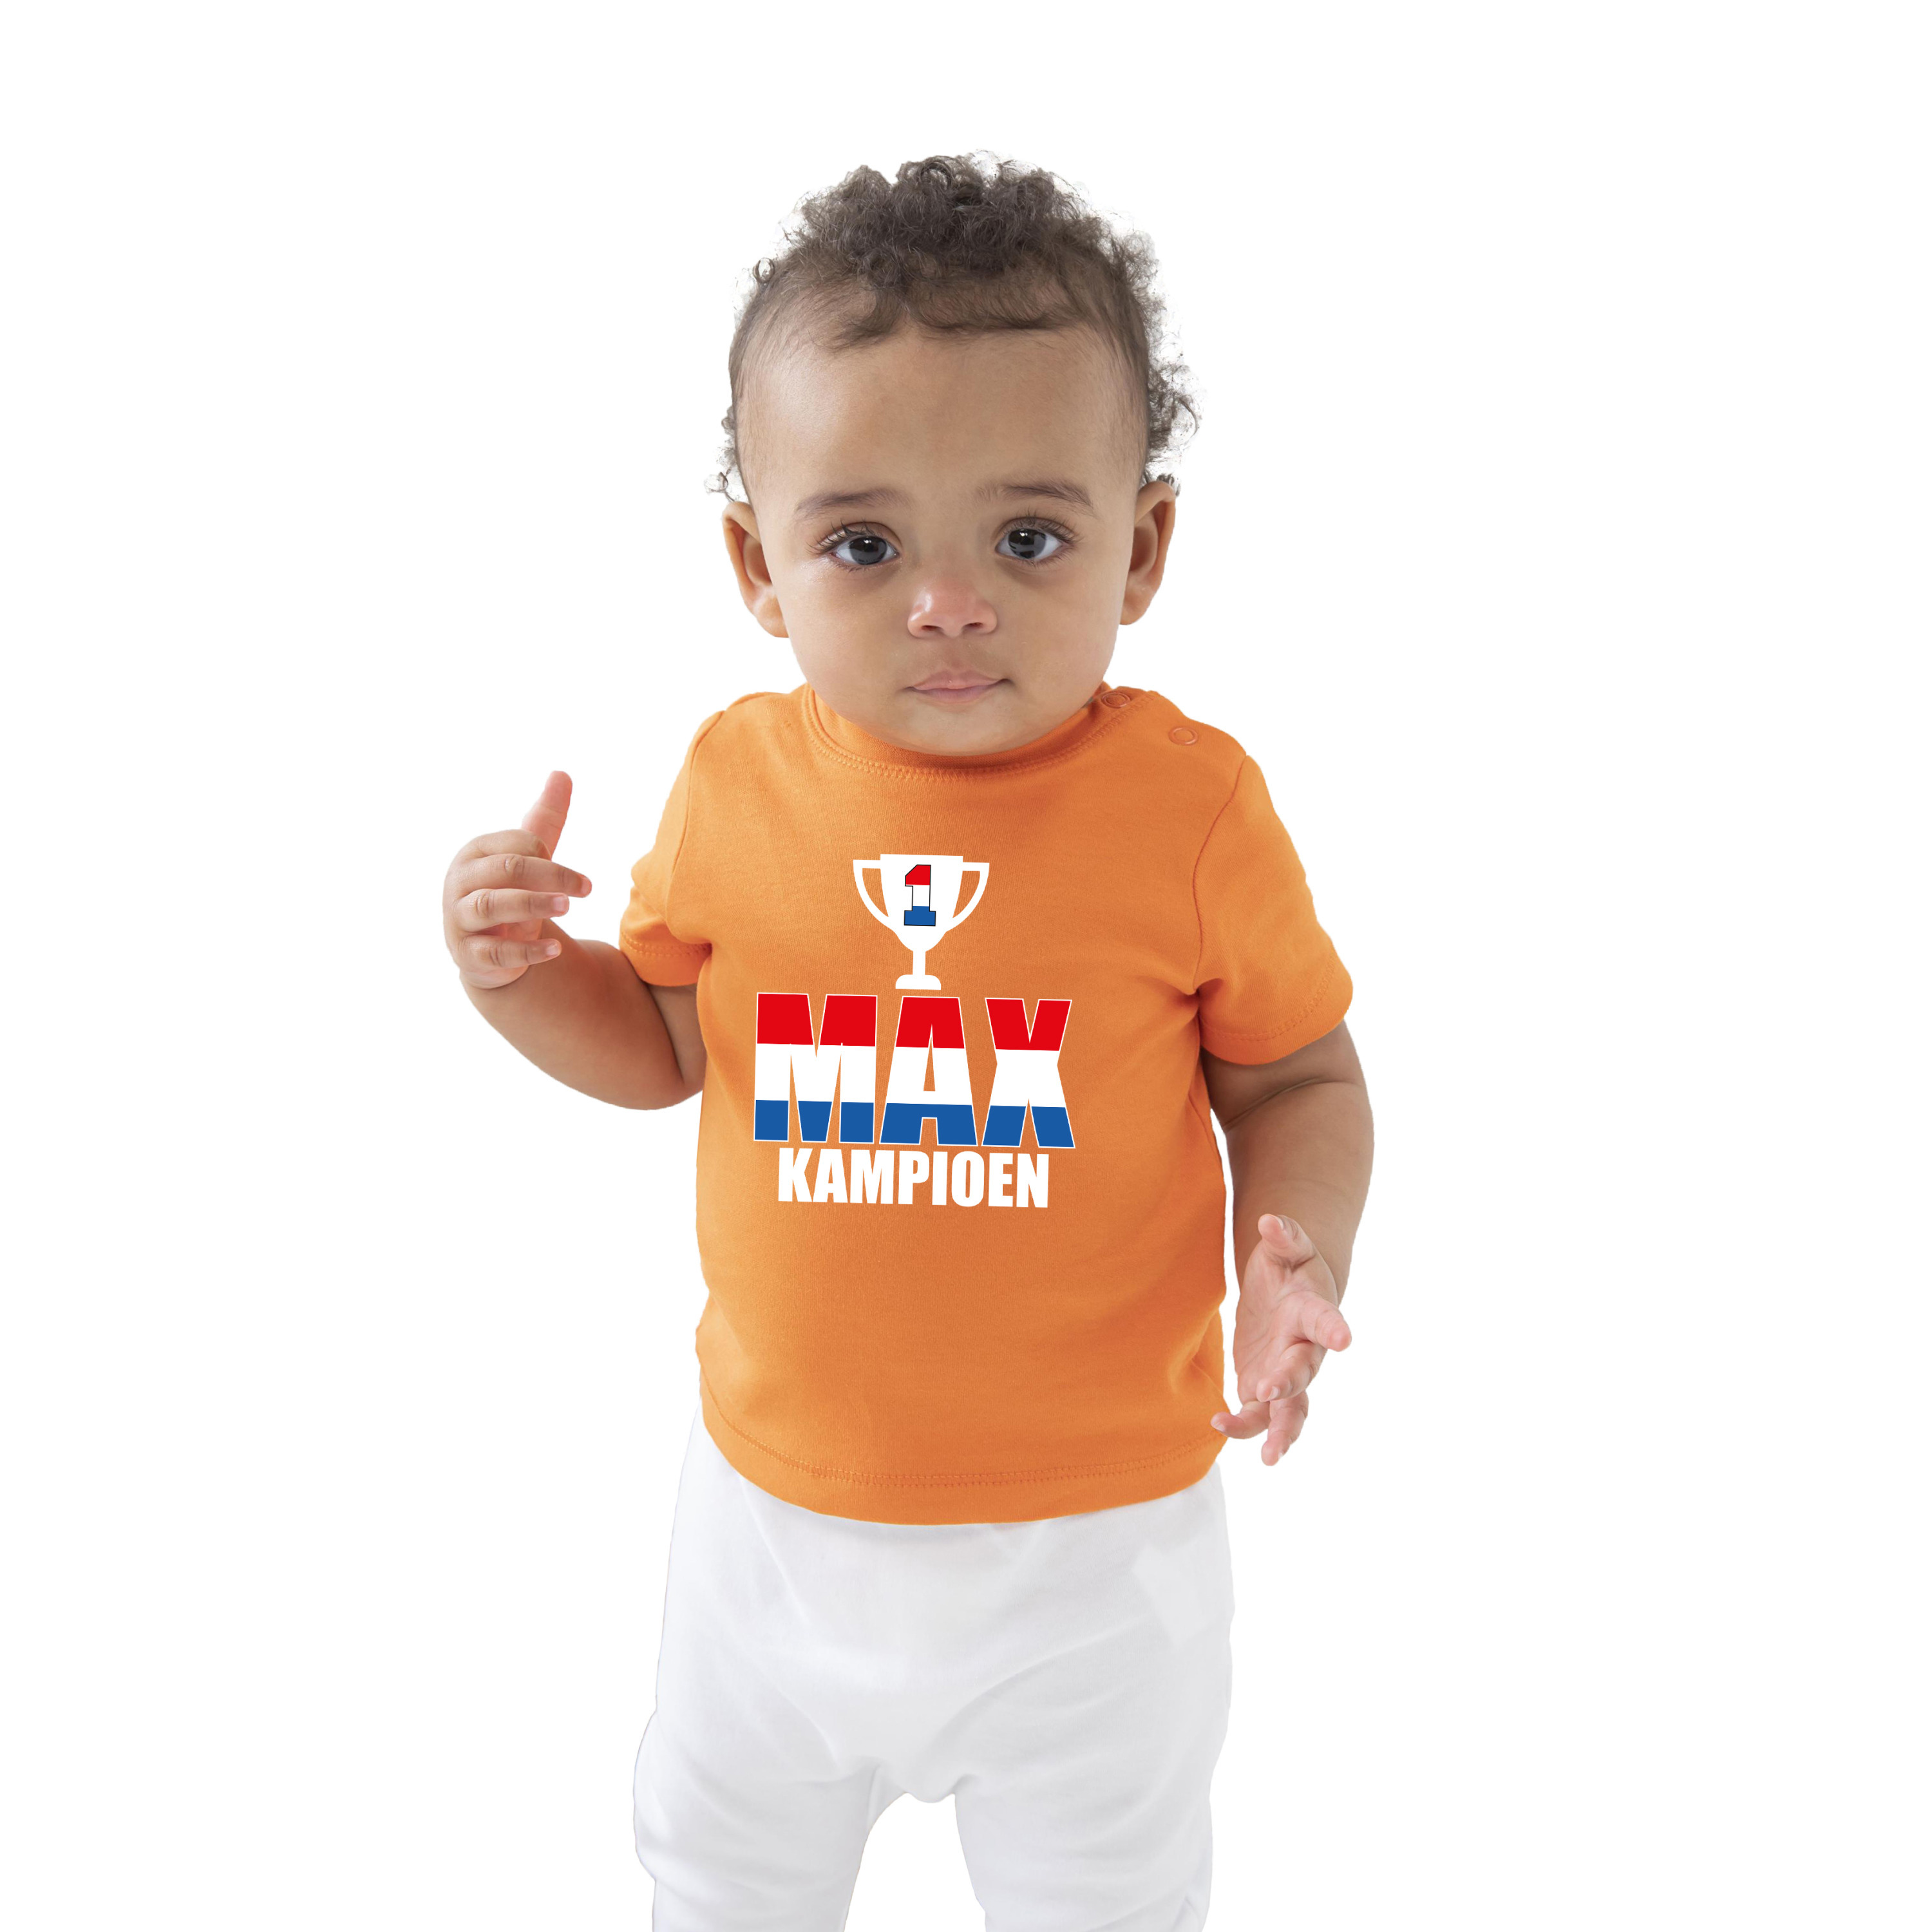 Oranje t-shirt Max kampioen beker supporter-race supporter voor baby-peuter